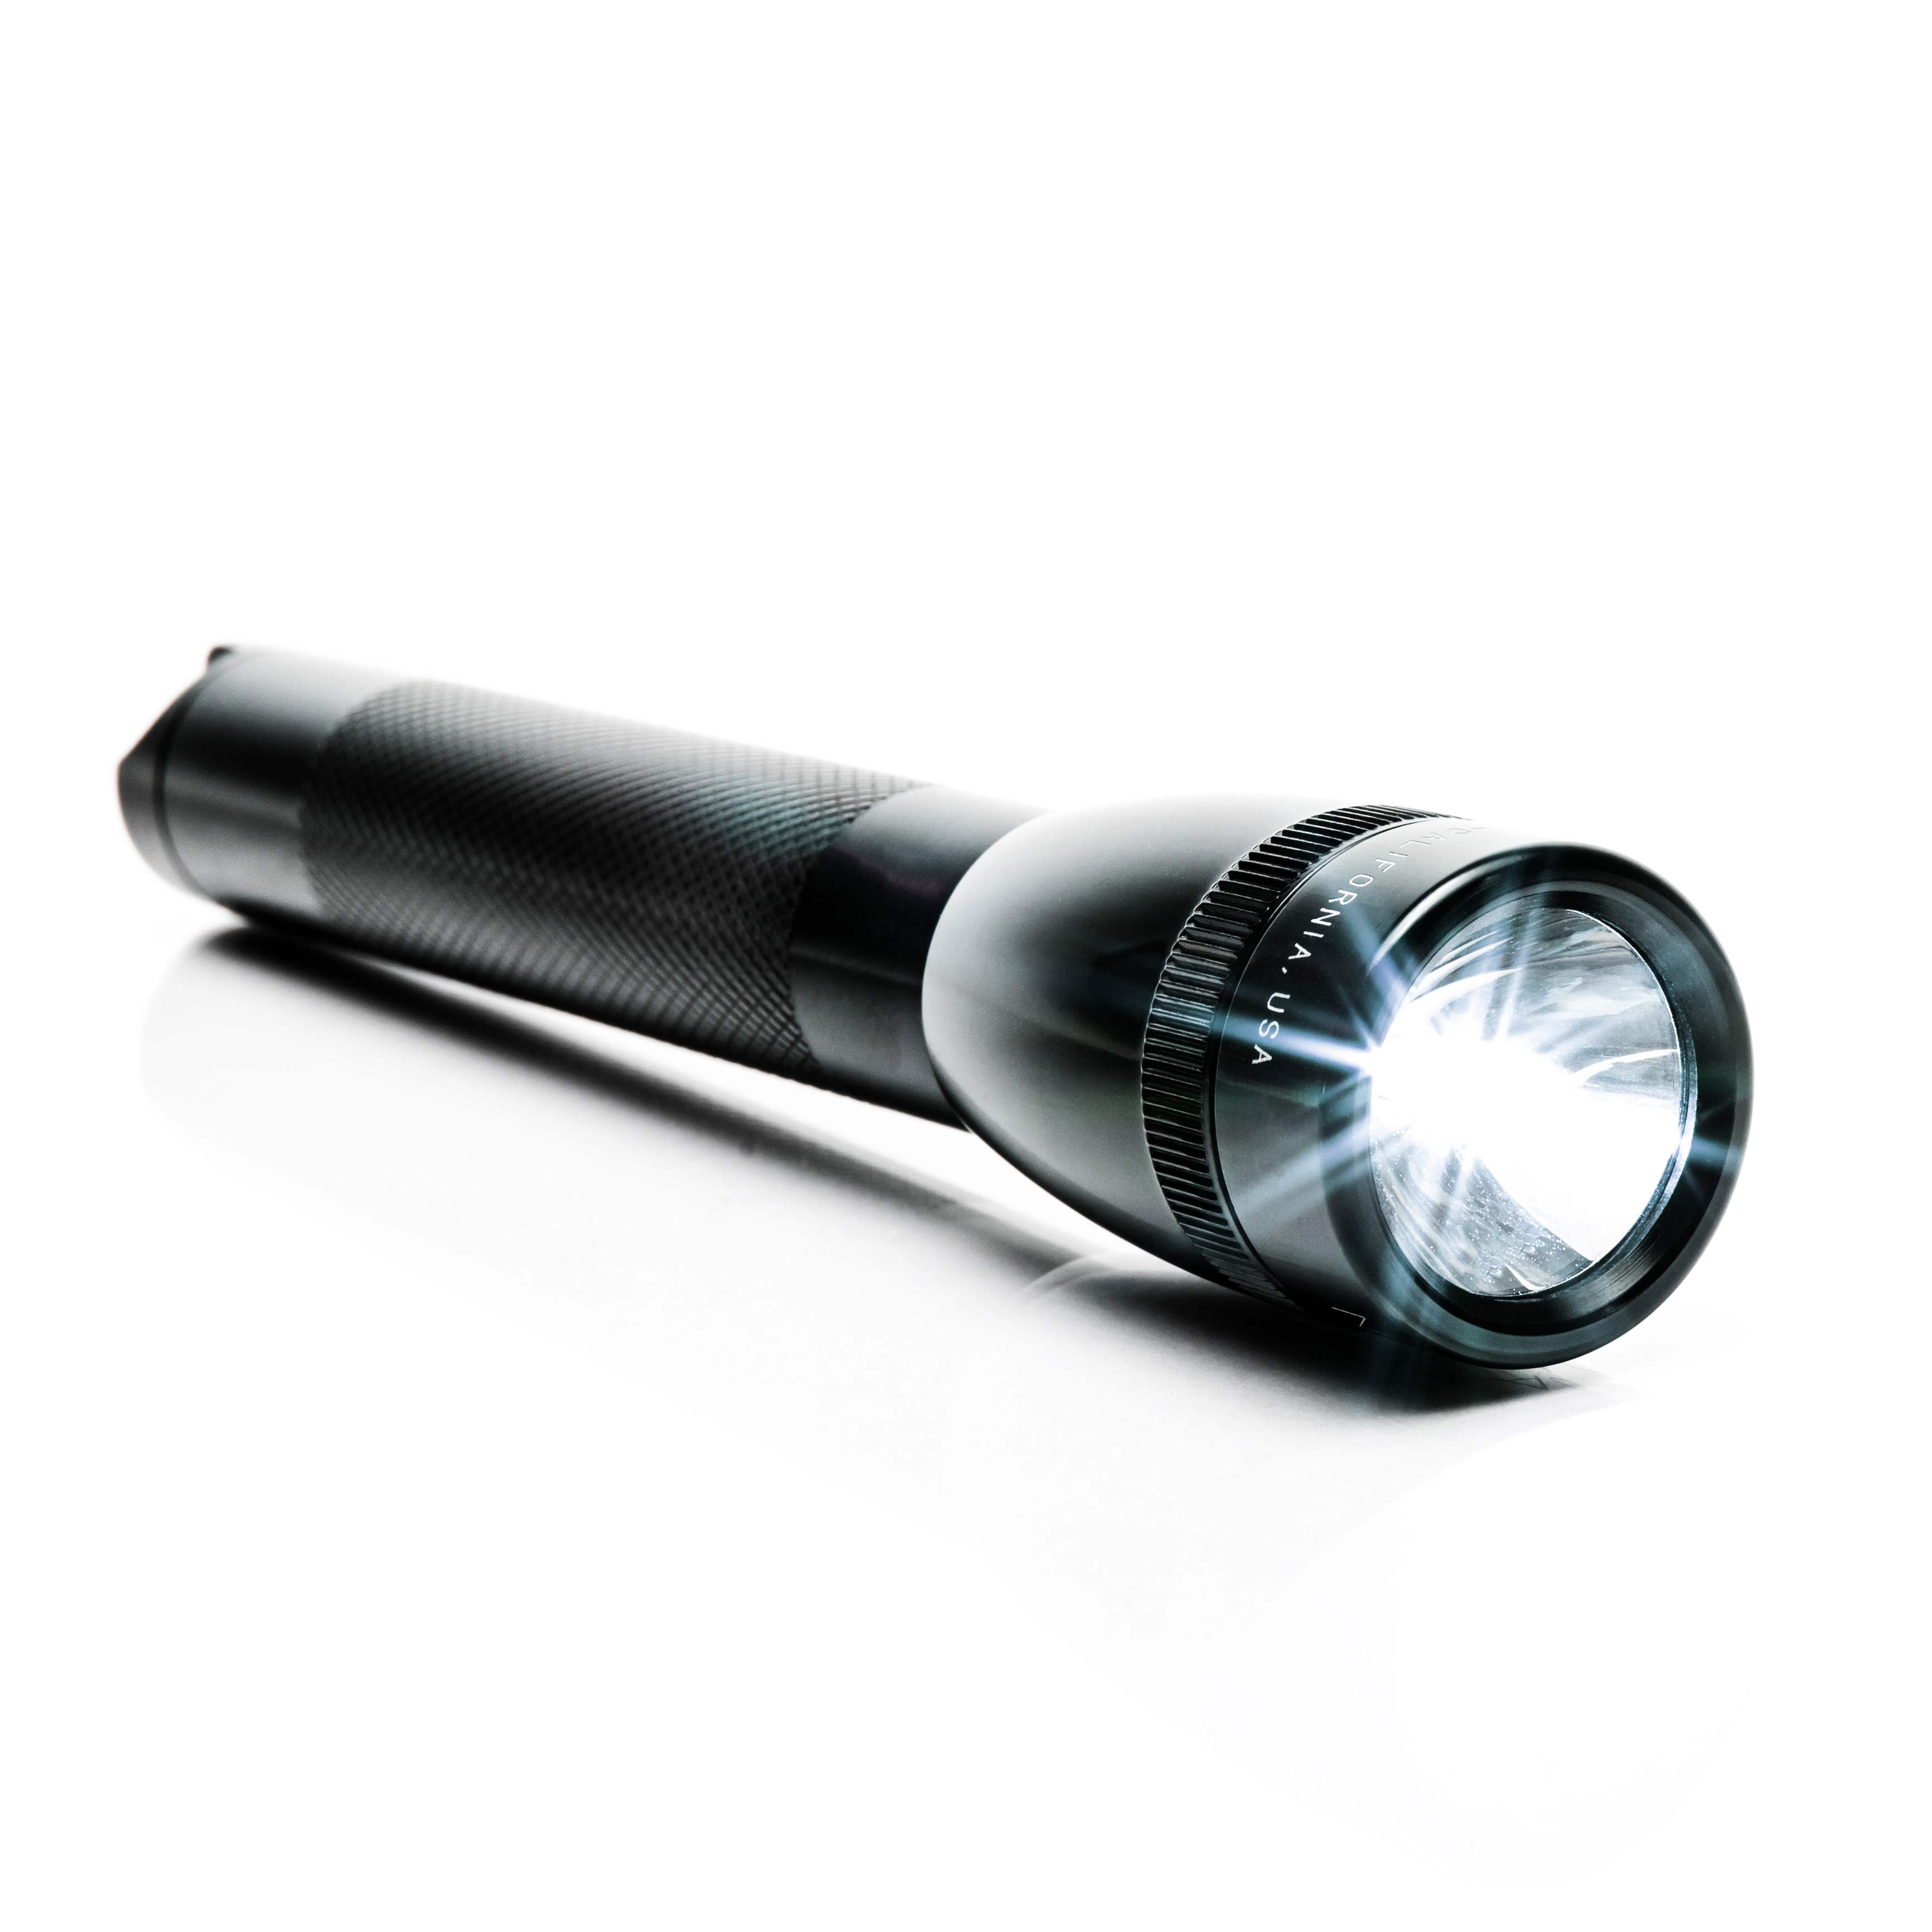 Litt Industries 350 Lumen Maglite LED Bulb & Lens KIT for 2-6 Cell